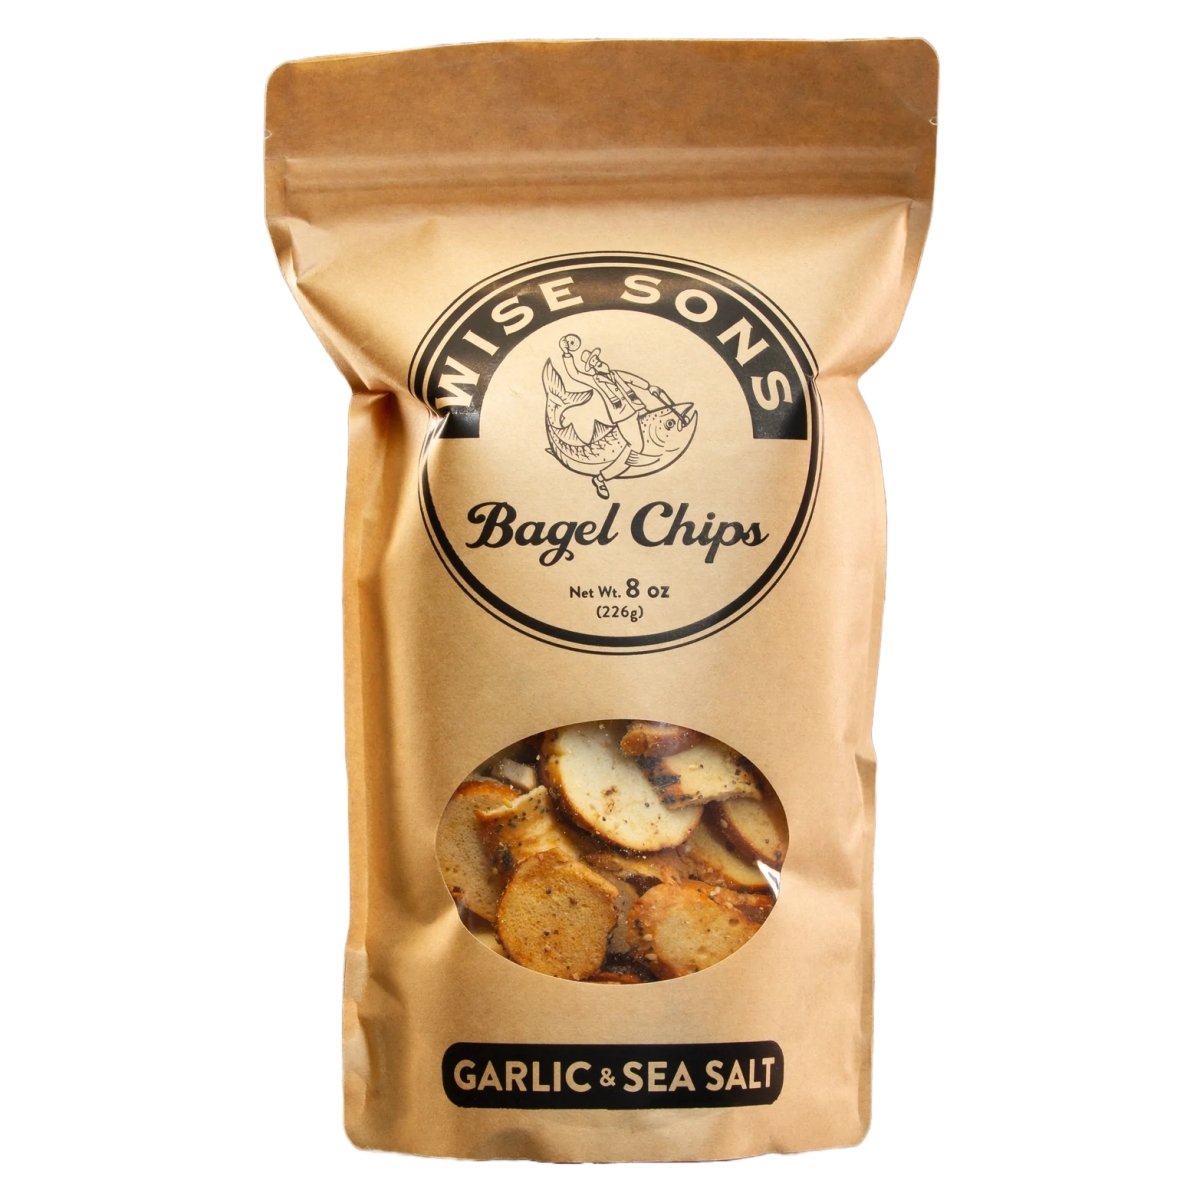 Wise Sons - 'Garlic & Sea Salt' Bagel Chips (8OZ) - The Epicurean Trader